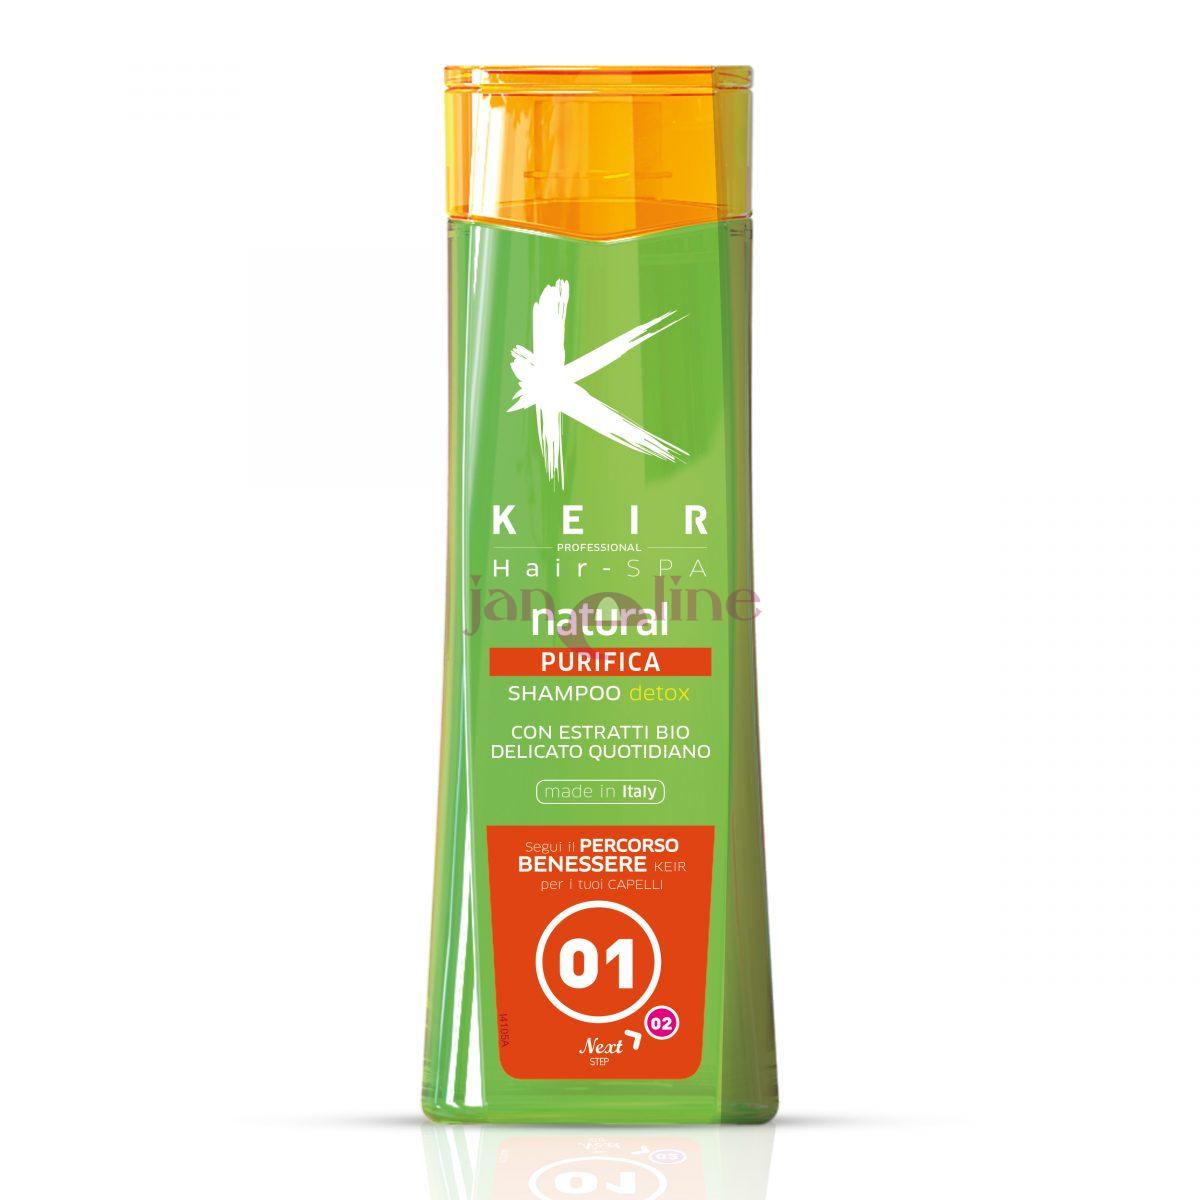 KEIR Professional Hair - SPA natural PURIFICA detox šampón 250 ml